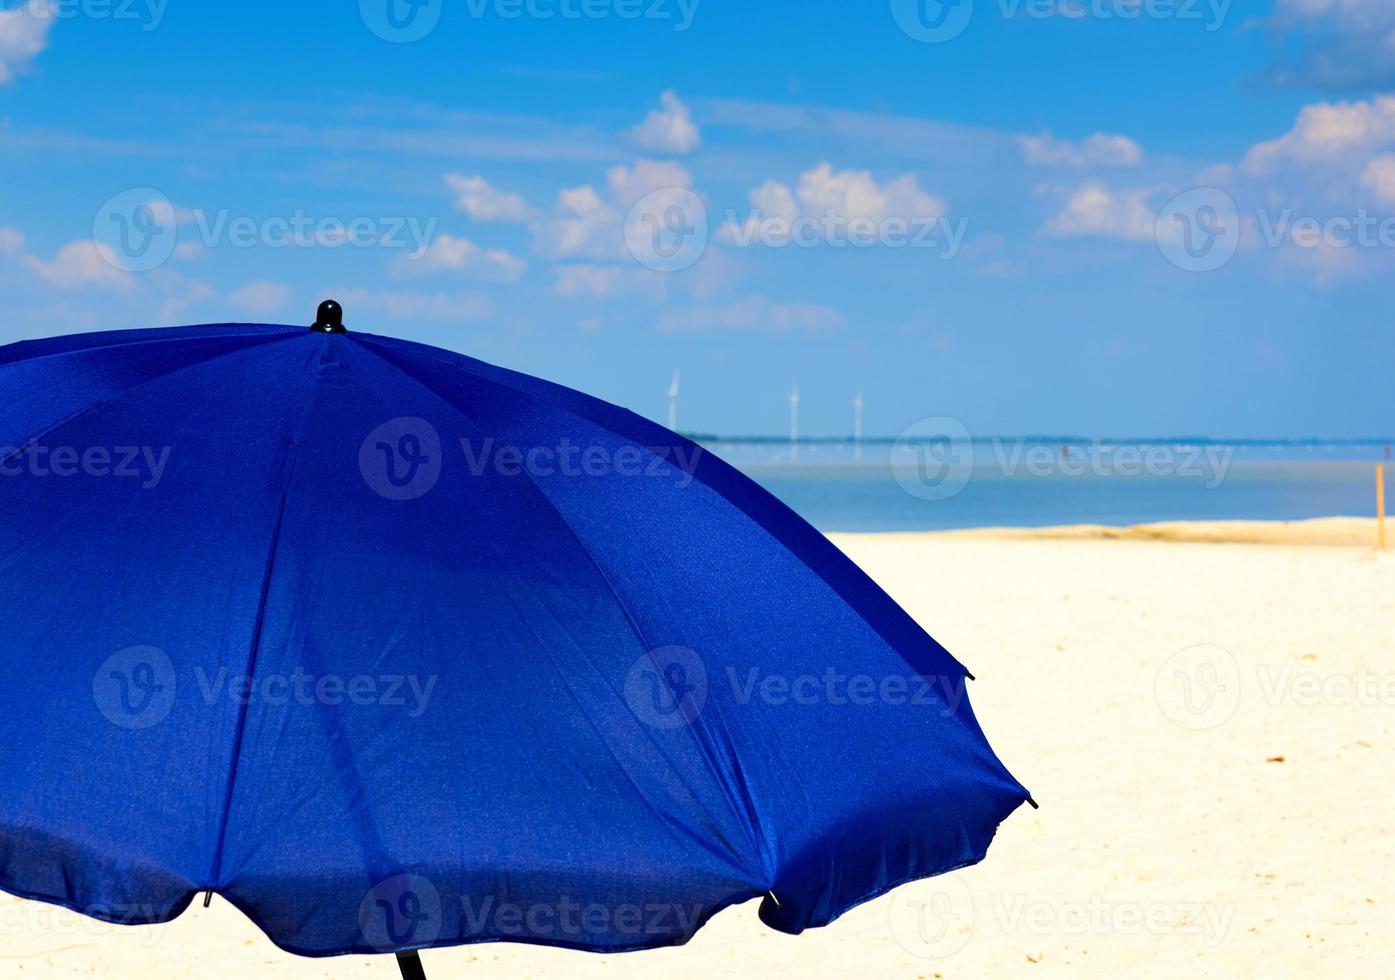 guarda-chuva têxtil azul no fundo do mar e céu com nuvens brancas foto